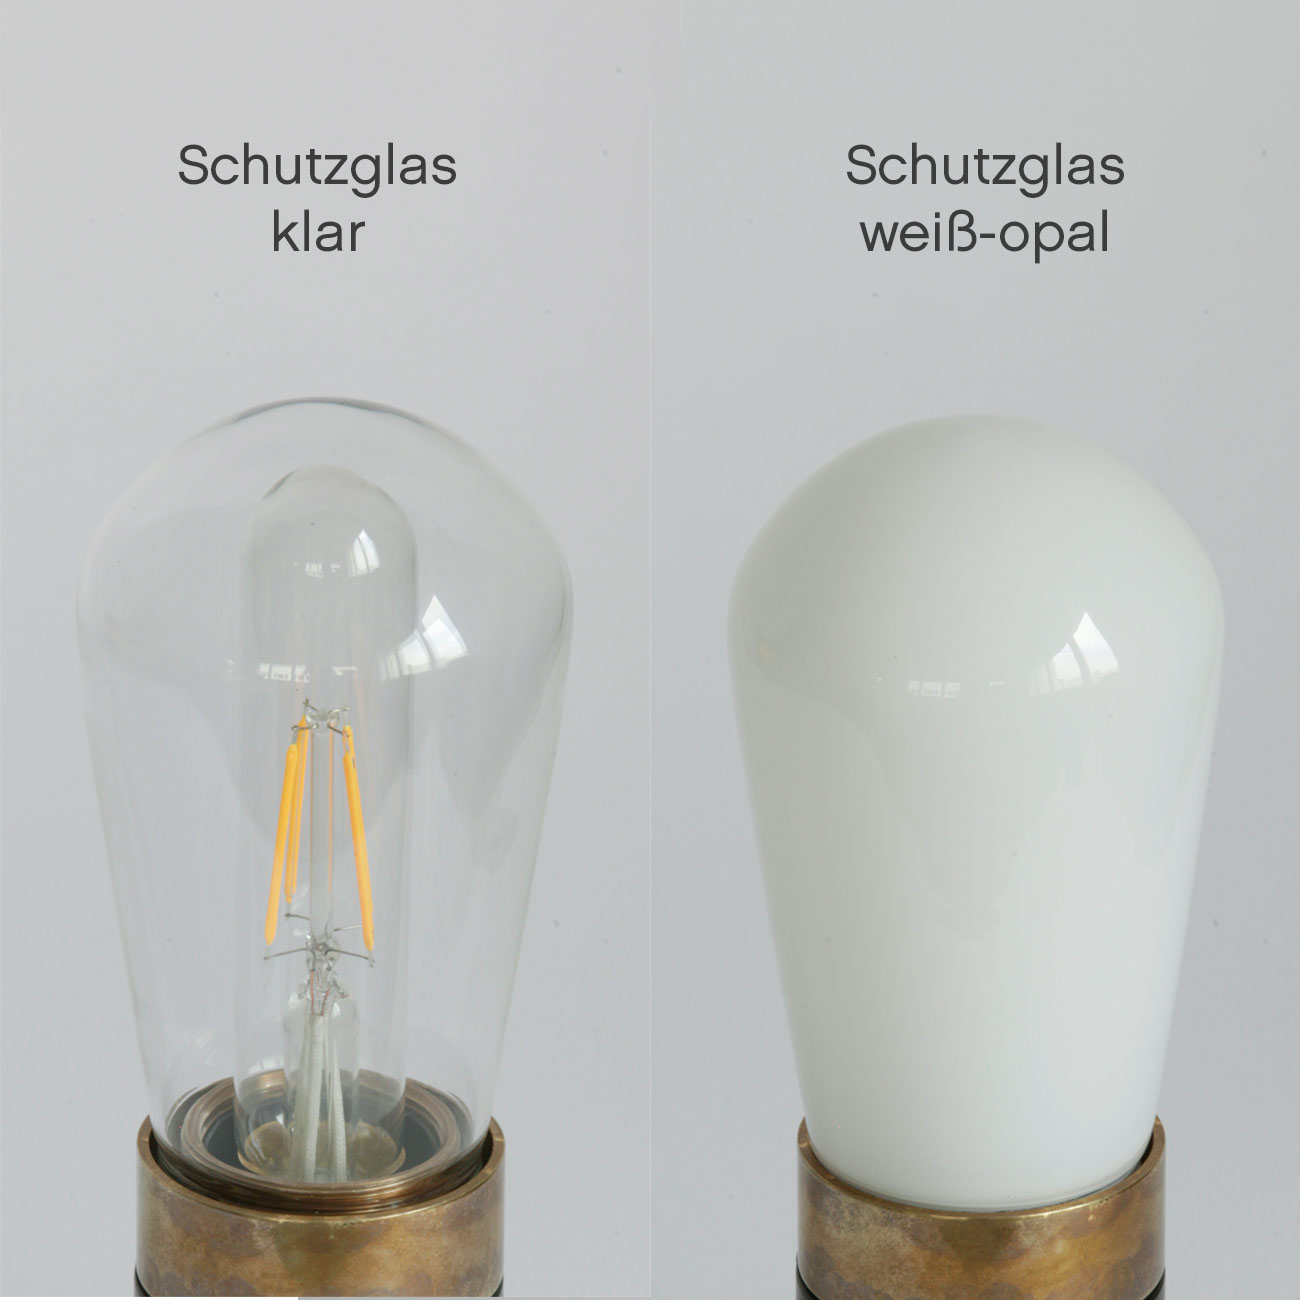 Schlichte Badezimmer-Wandlampe mit Glaskolben, IP65: Klares oder weiß-opales Schutzglas (hier in einer Halterung in Alt-Messing antik patiniert)